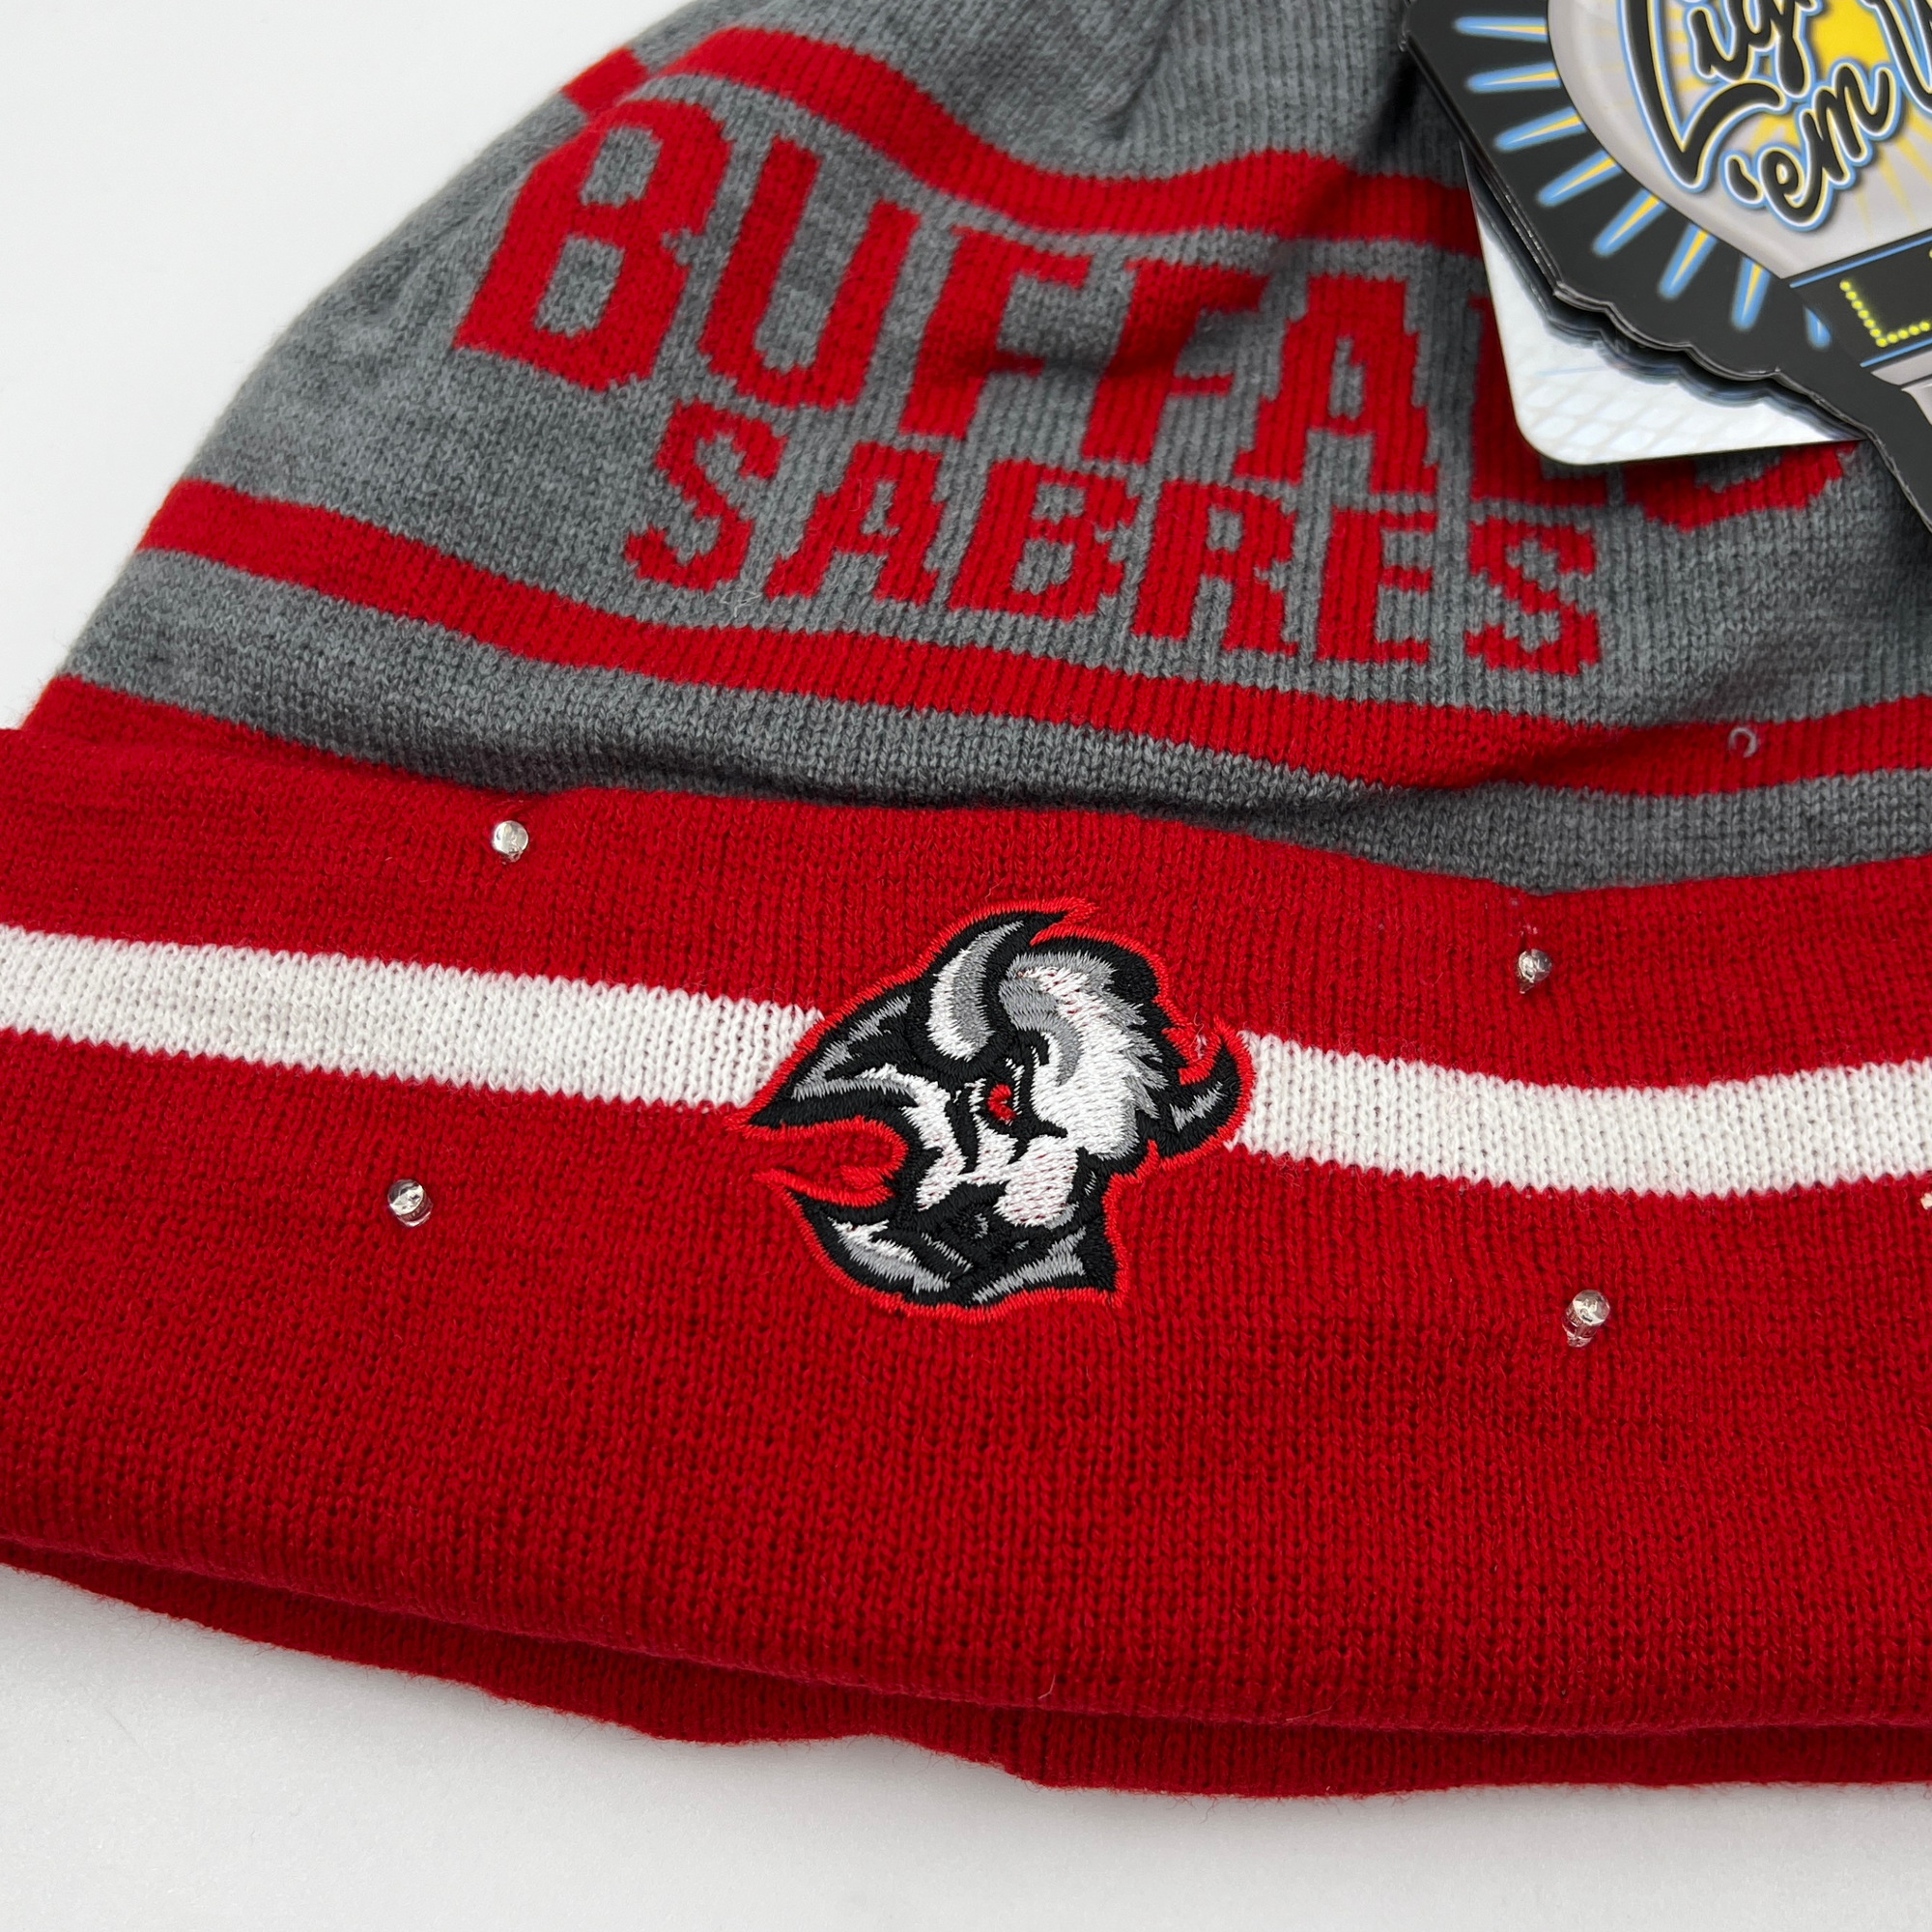 Buffalo Sabres Alternate Logo Light Up Winter Knit Hat